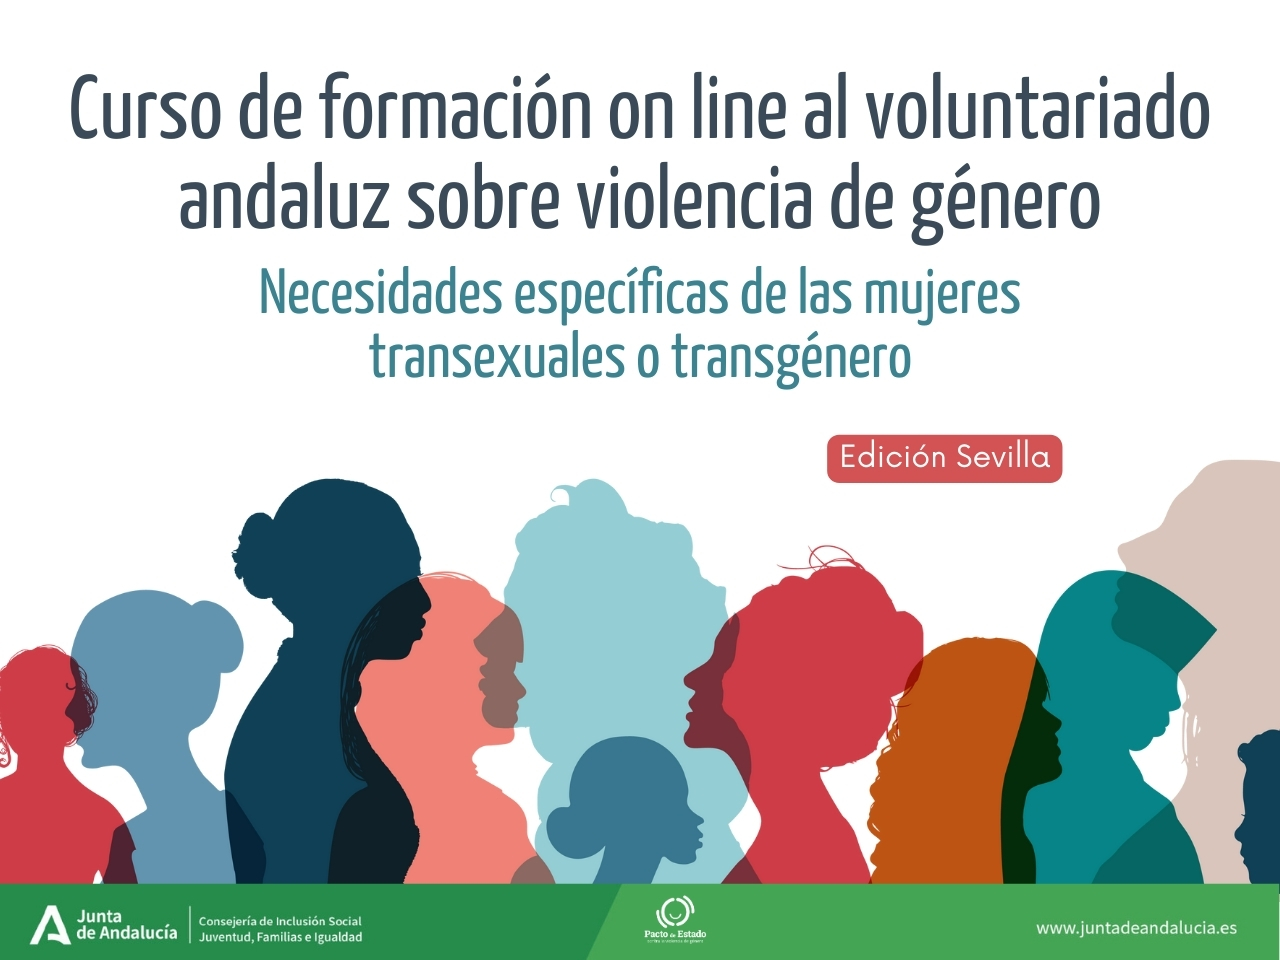 Curso de formación online al voluntariado andaluz sobre violencia de género Sevilla